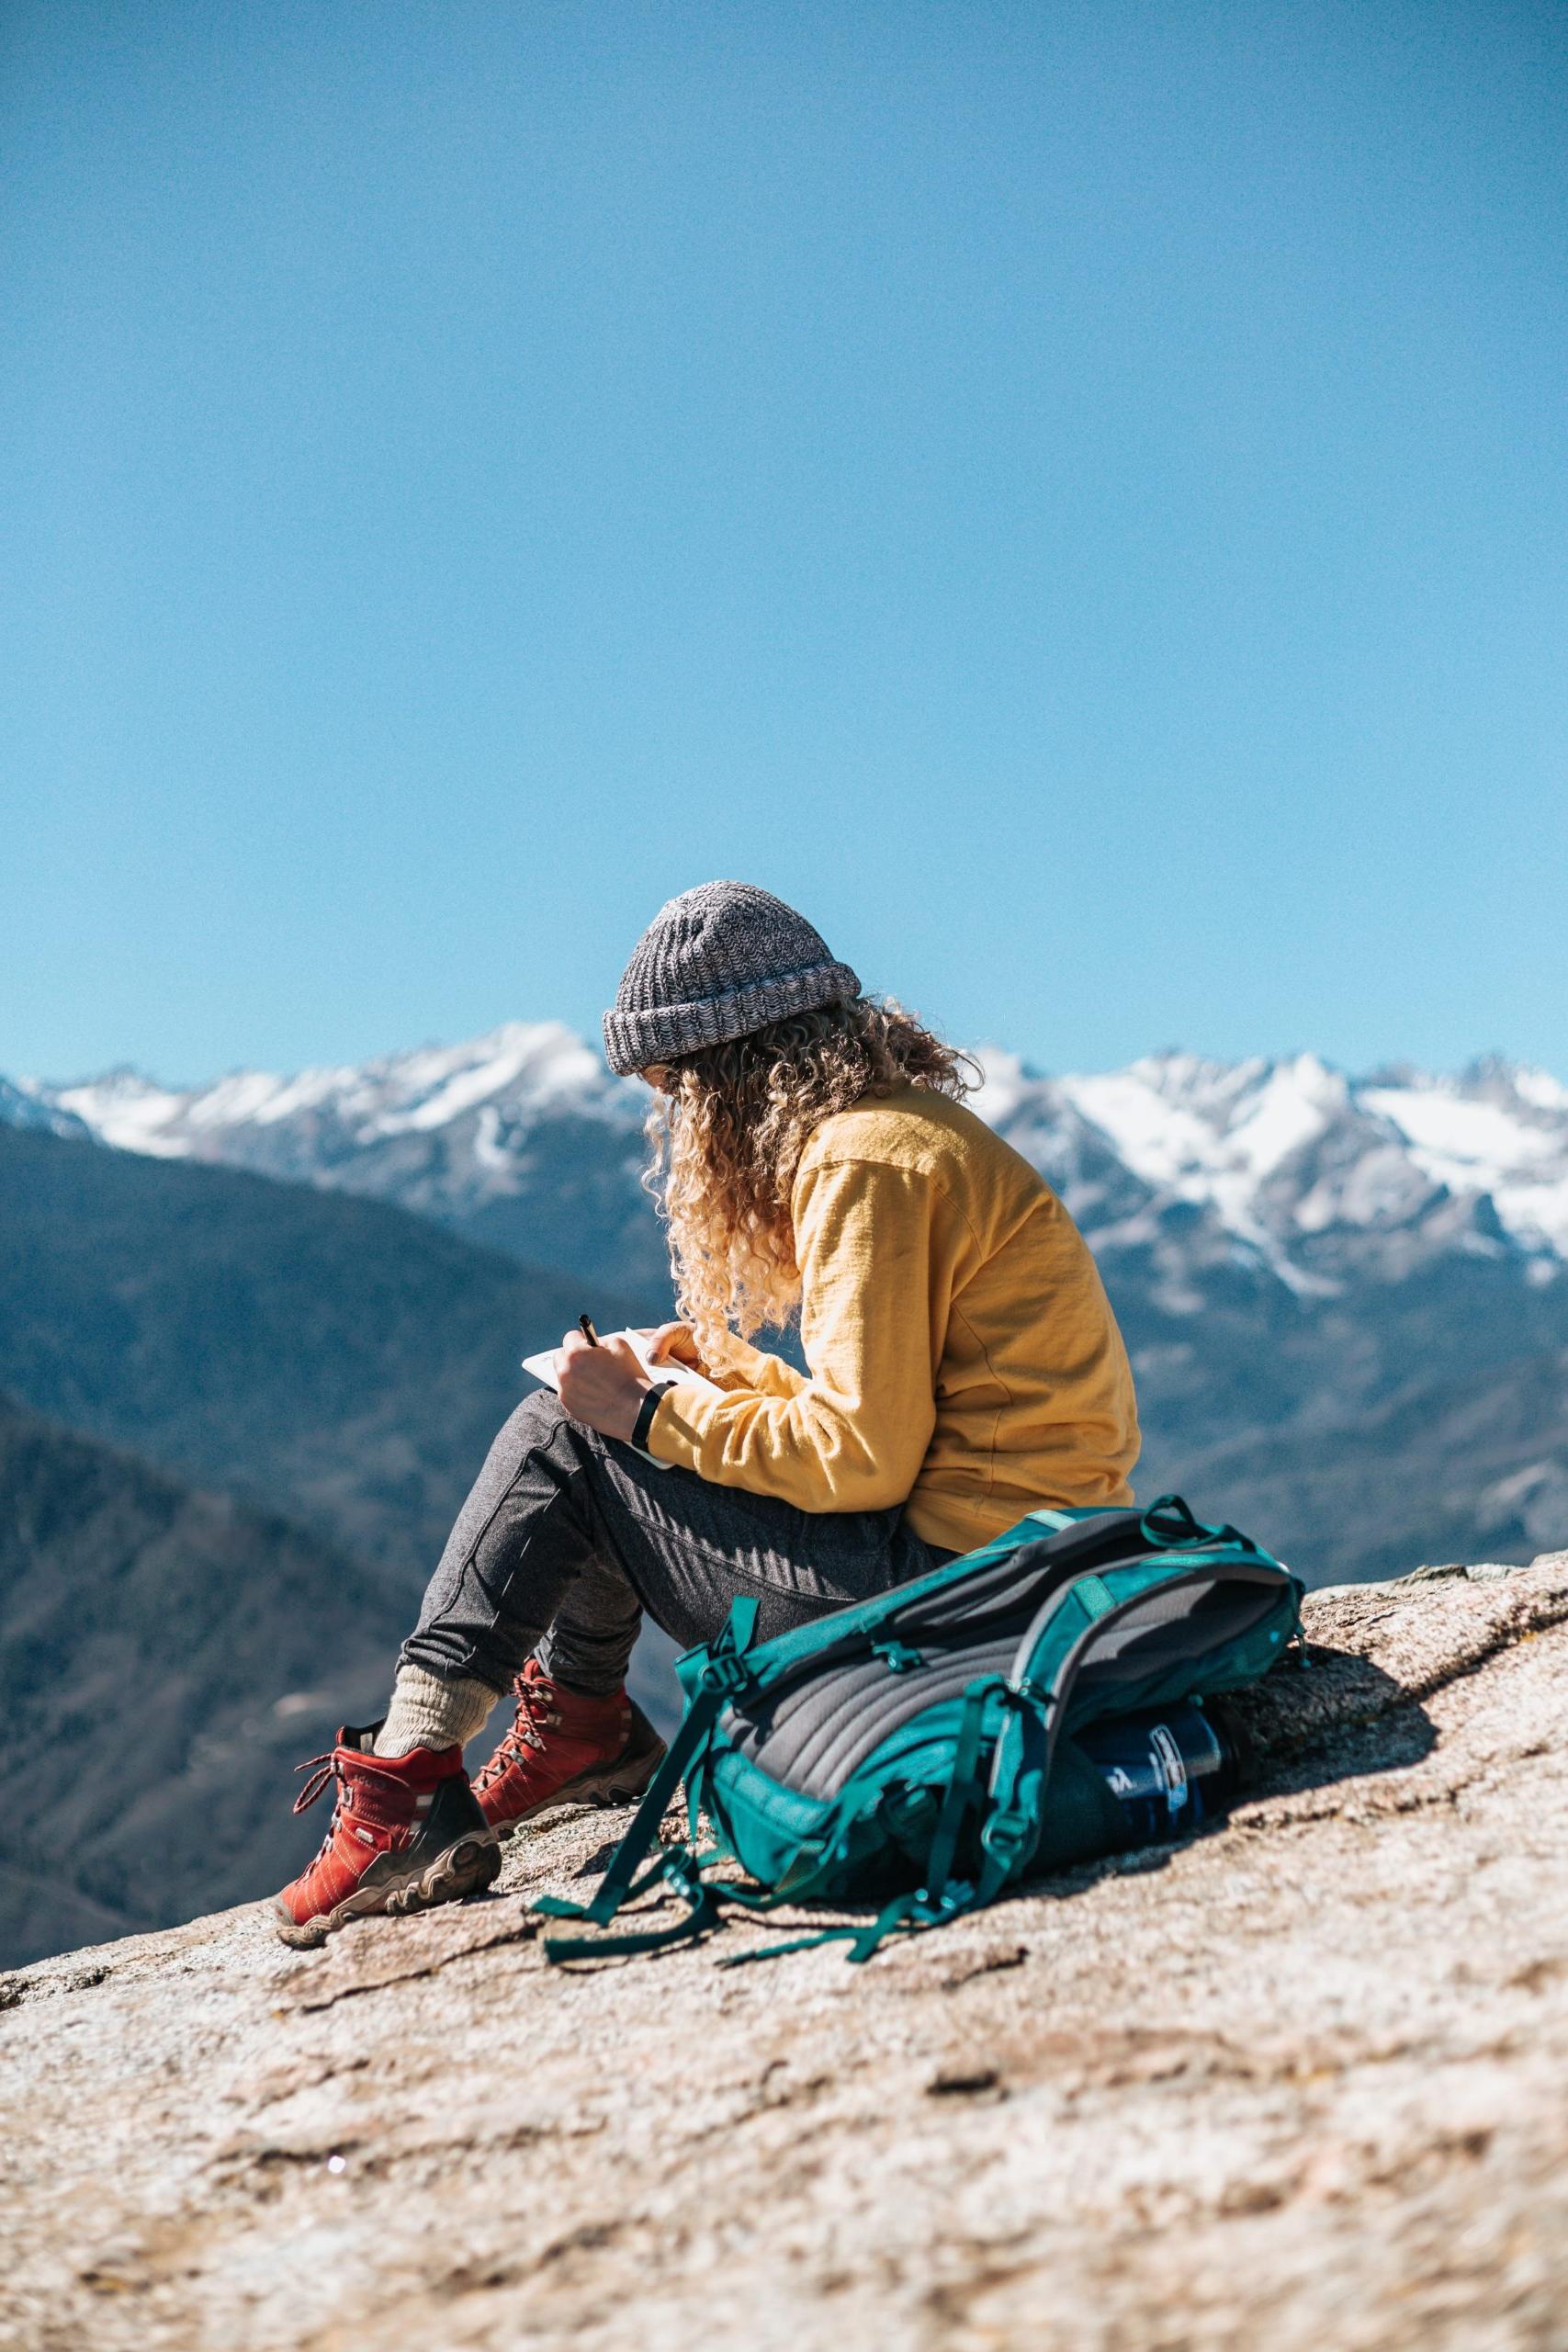 一张年轻女子坐在山里某处的照片